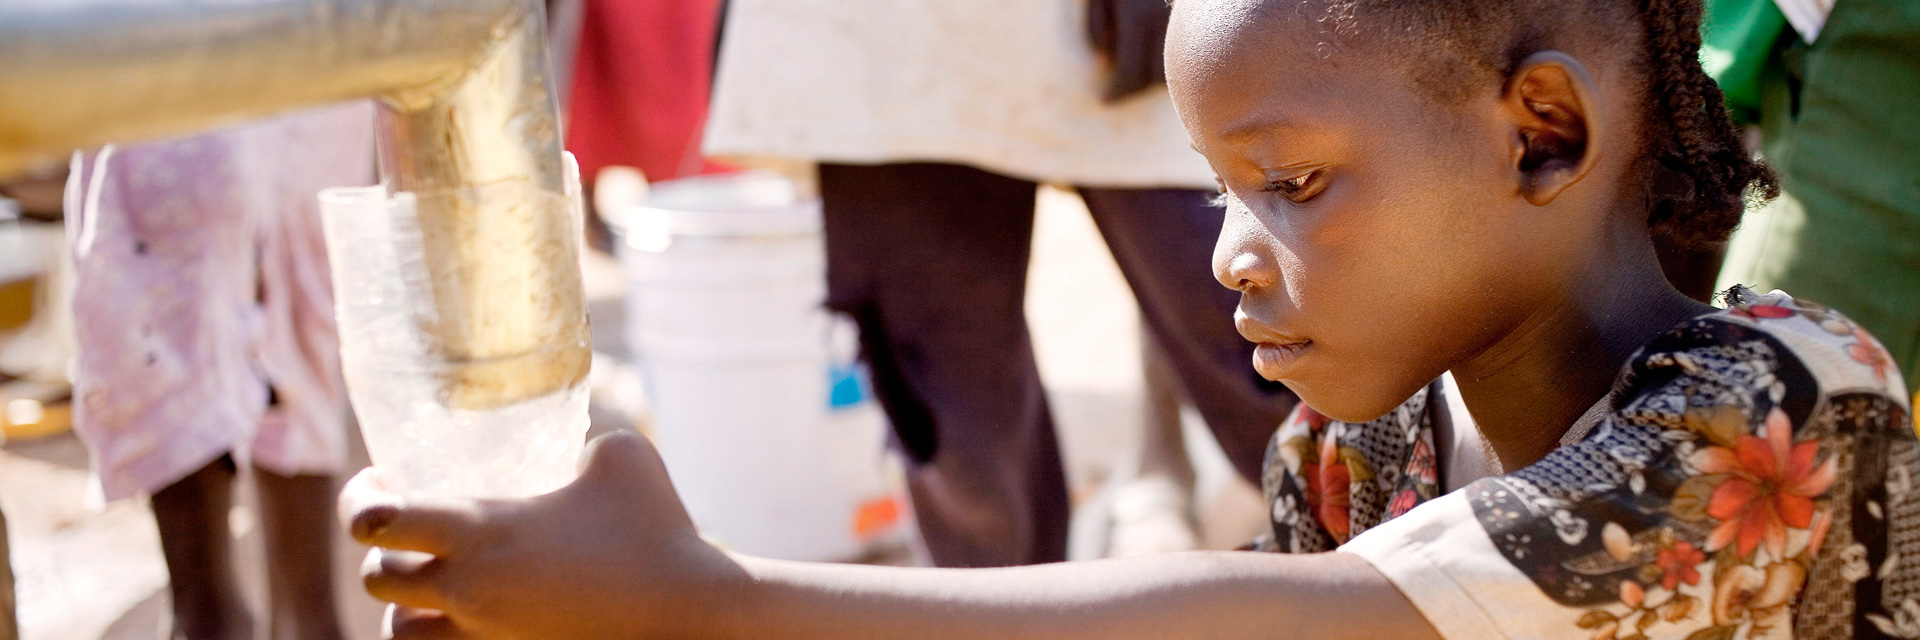 Foto: Ein sudanesisches Mädchen füllt Wasser in einen Kanister